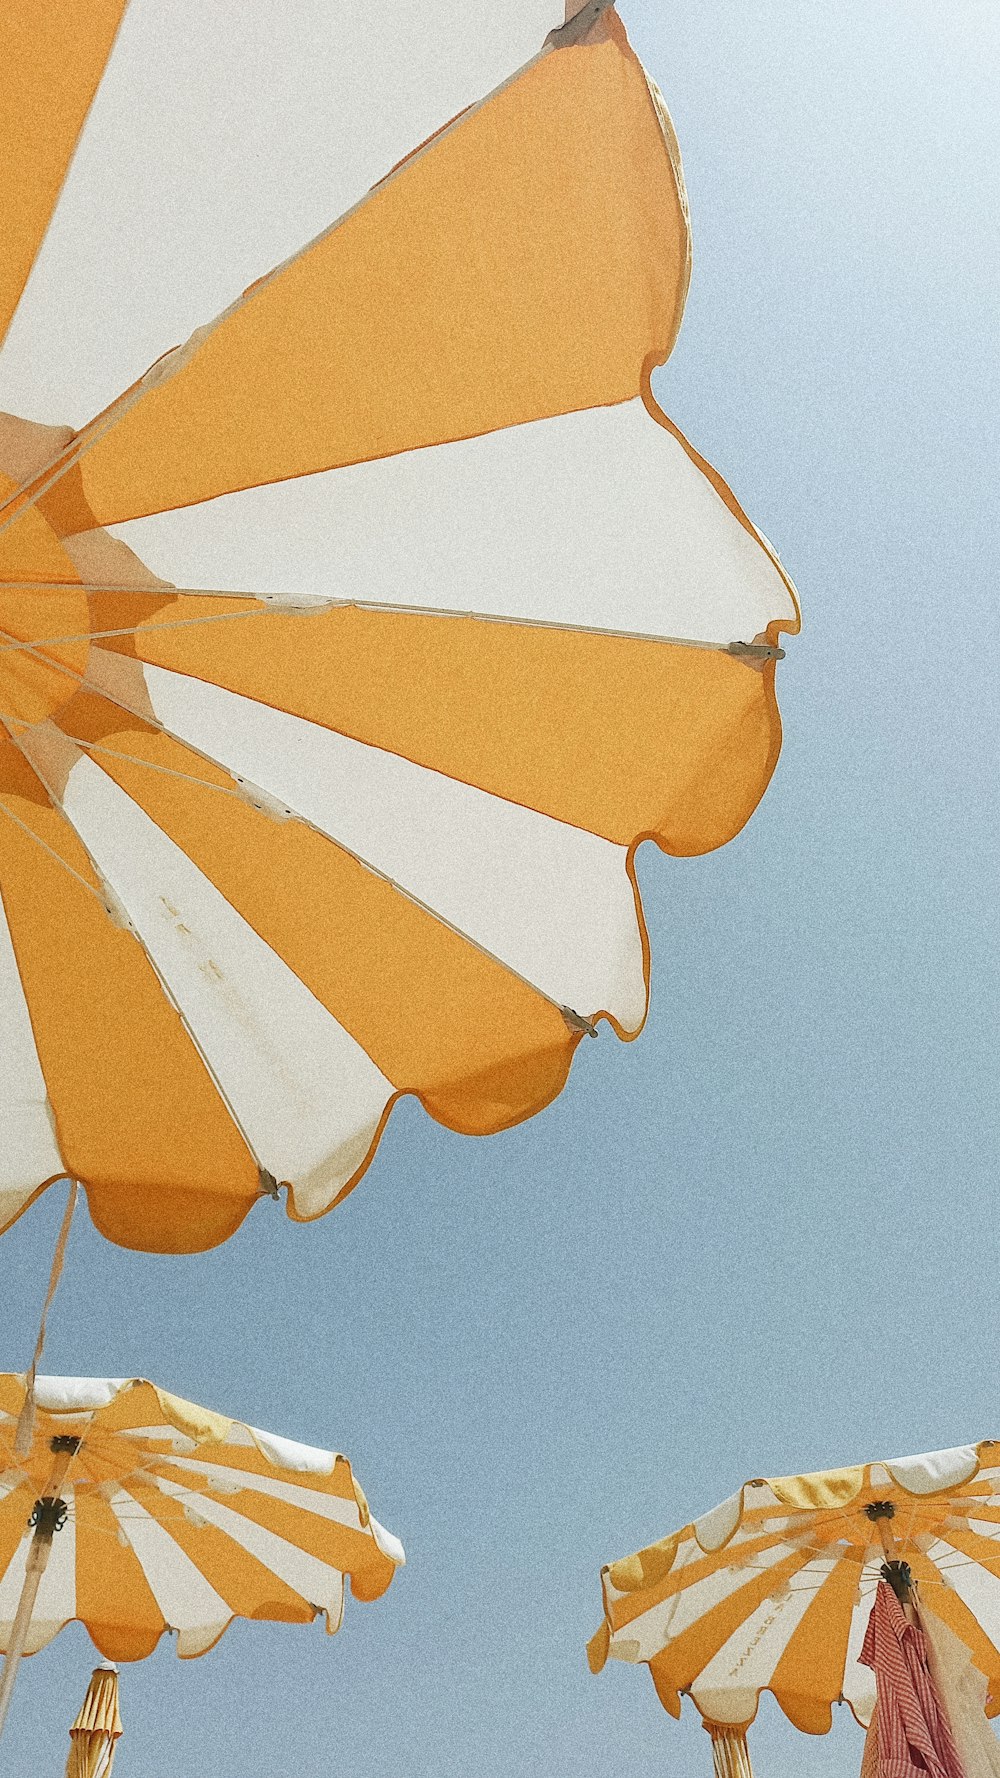 gelber und orangefarbener Regenschirm unter blauem Himmel tagsüber